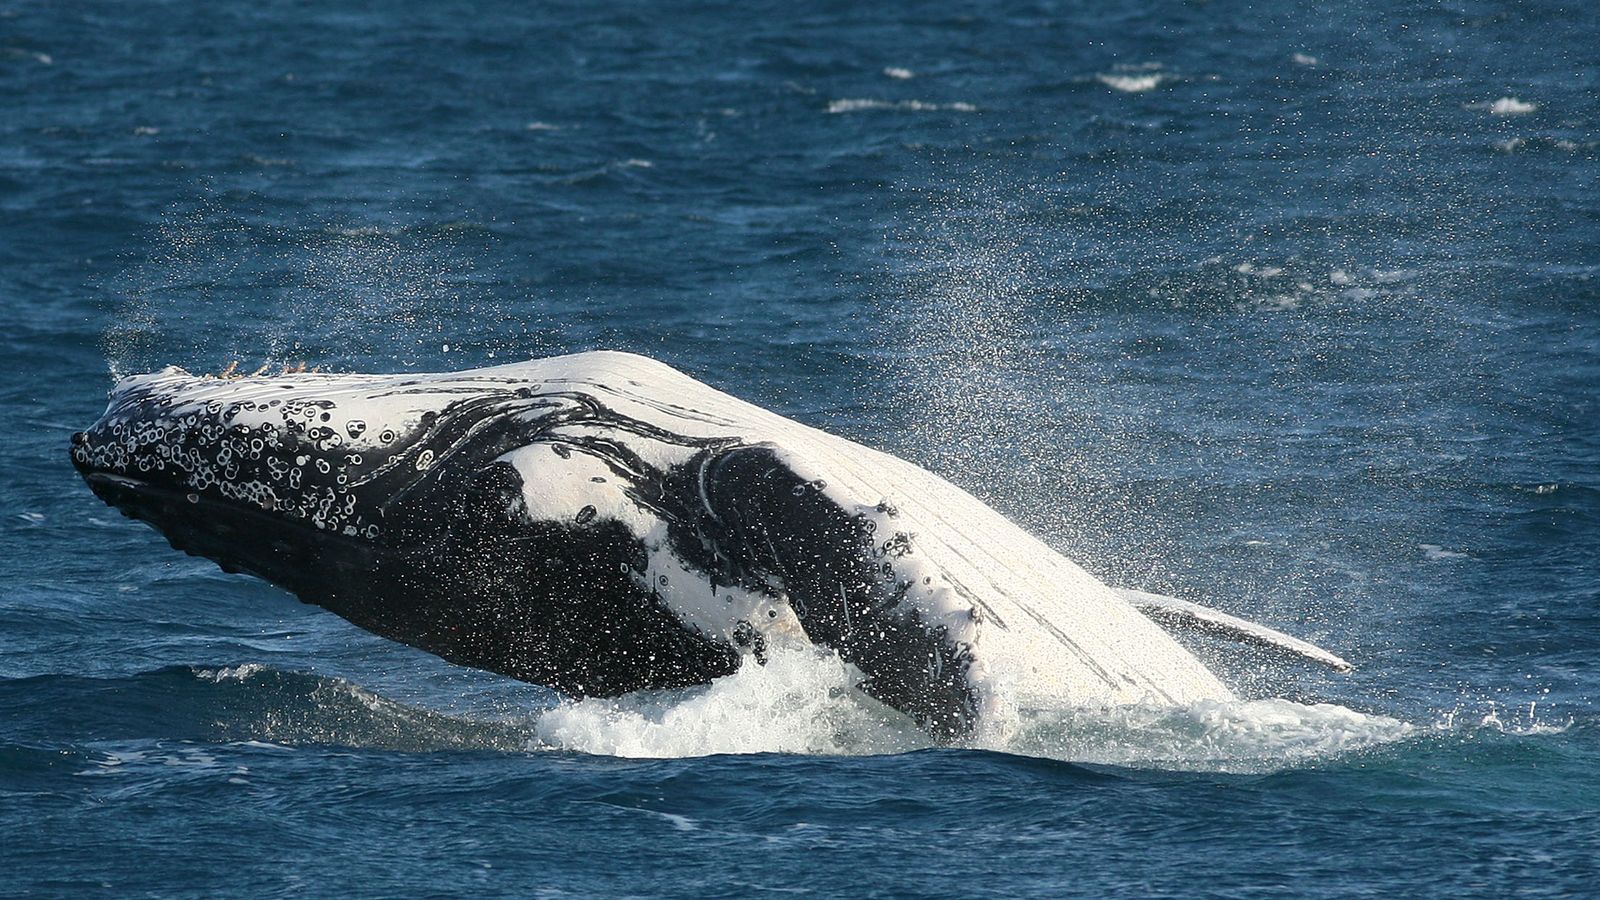 Un homme meurt après qu’une baleine ait renversé un bateau en Australie dans un « accident absolument anormal » |  Nouvelles du monde